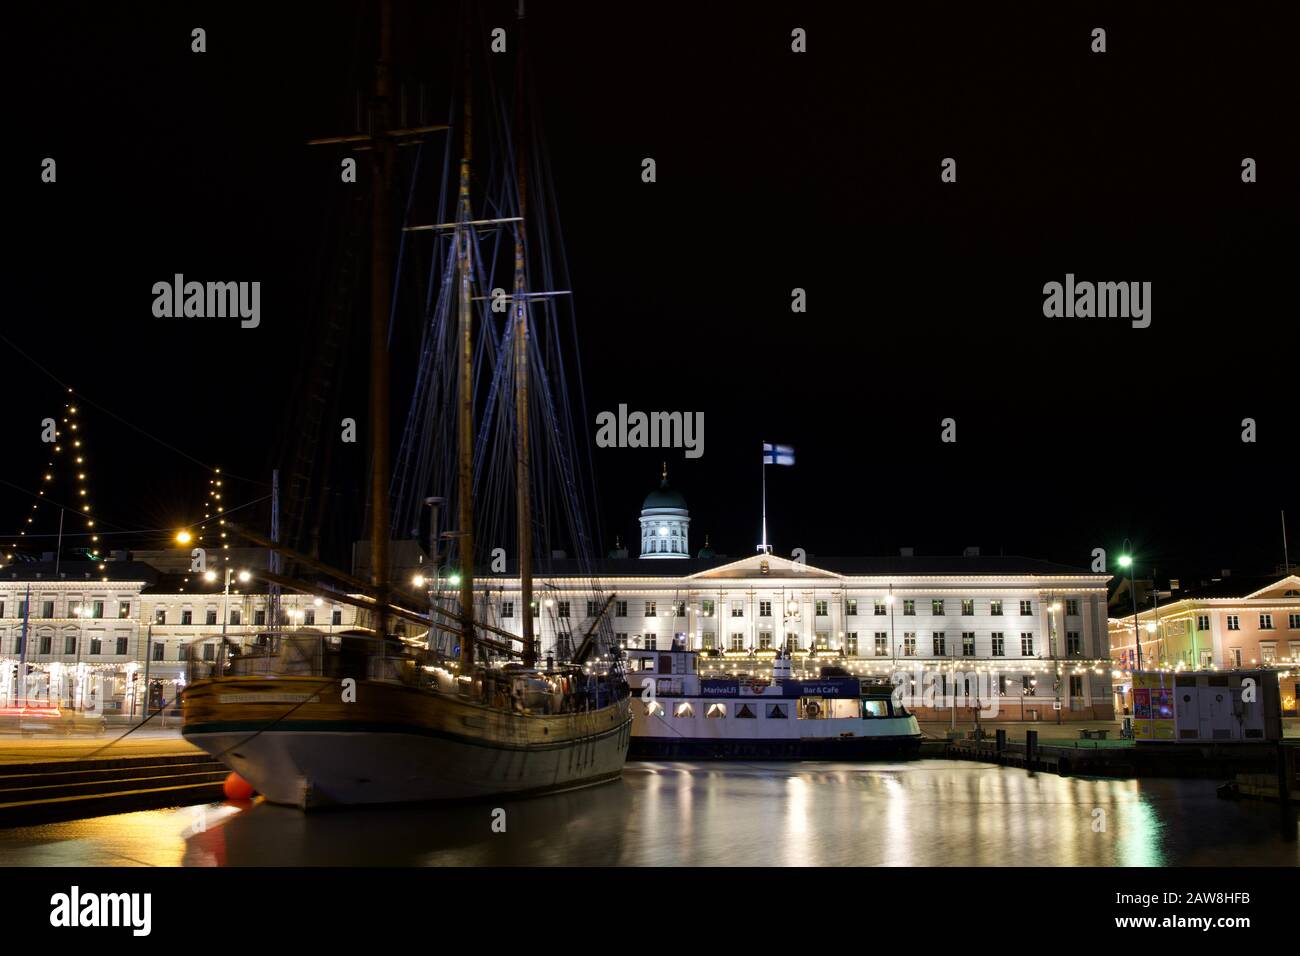 Helsinki, Finlandia - 21 gennaio 2020: Il Kathrina Rauma è un ristorante in una barca che ogni anno ormeggia al porto vicino al municipio di Helsinki Foto Stock